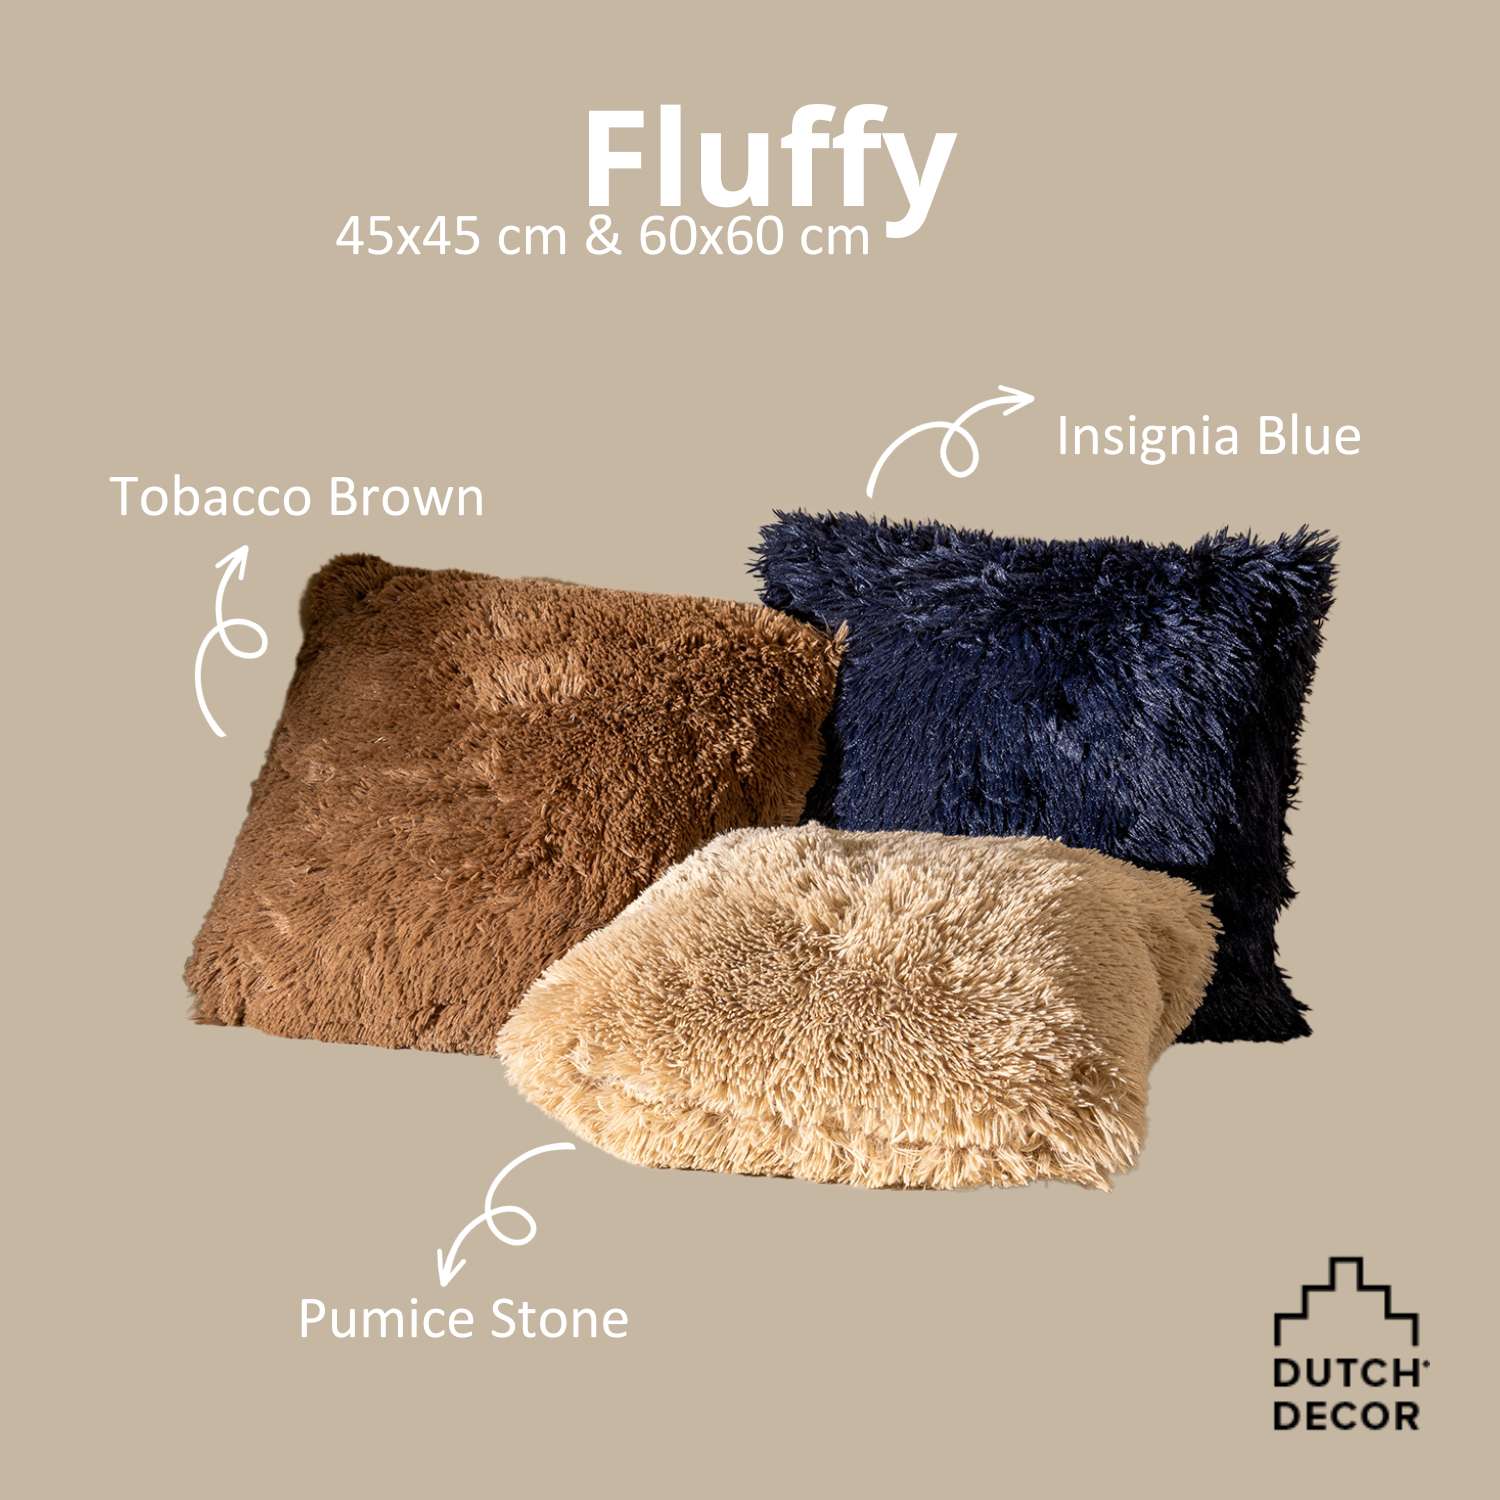 FLUFFY - Sierkussen 45x45 cm - superzacht - effen kleur - Tobacco Brown - bruin